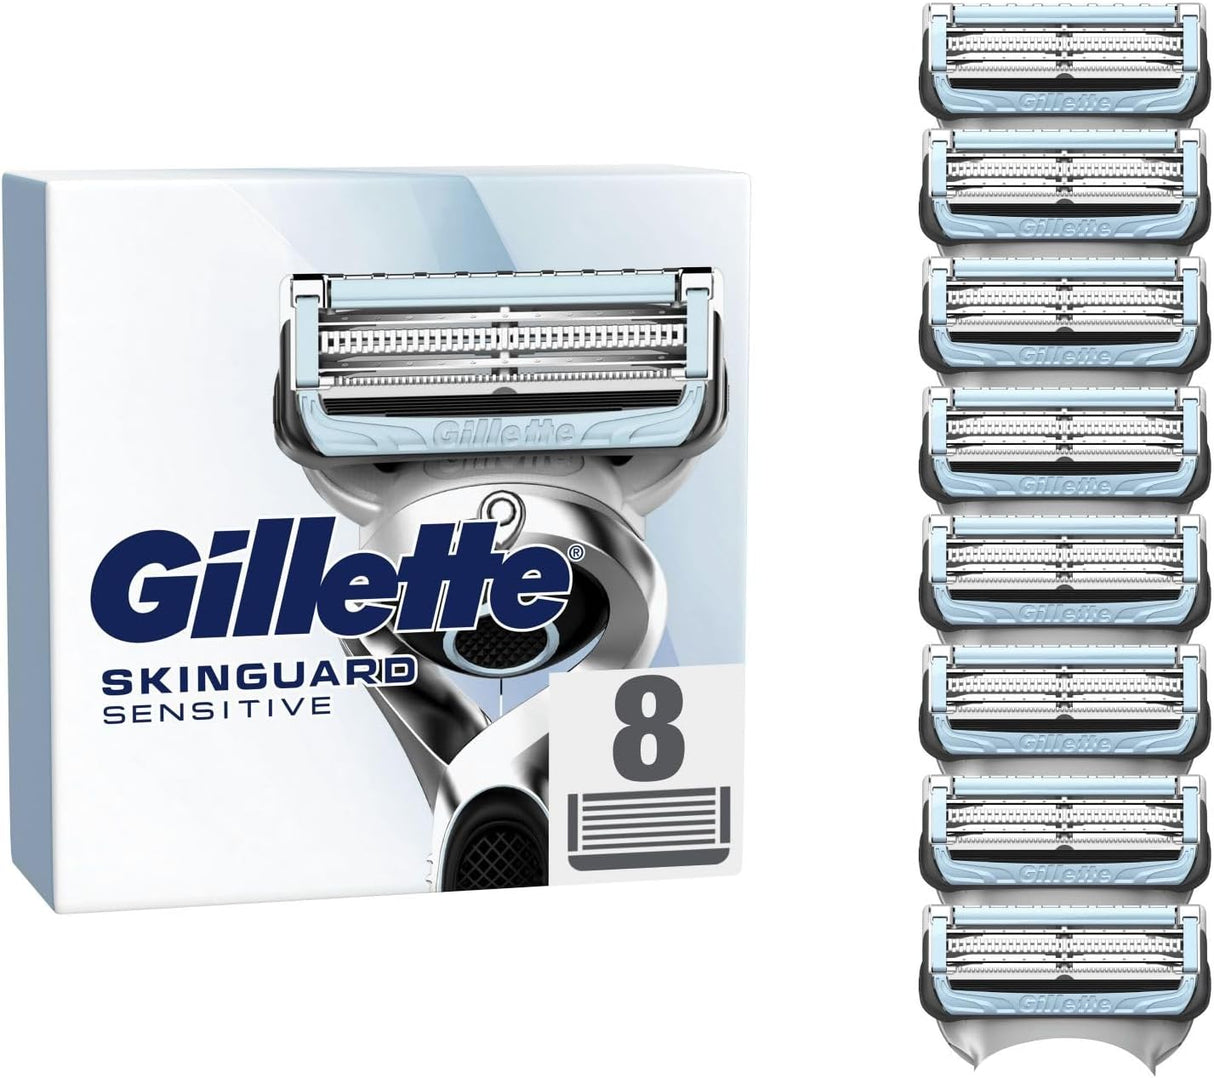 Gillette SkinGuard Sensitive Razor Blades - 8 Pack